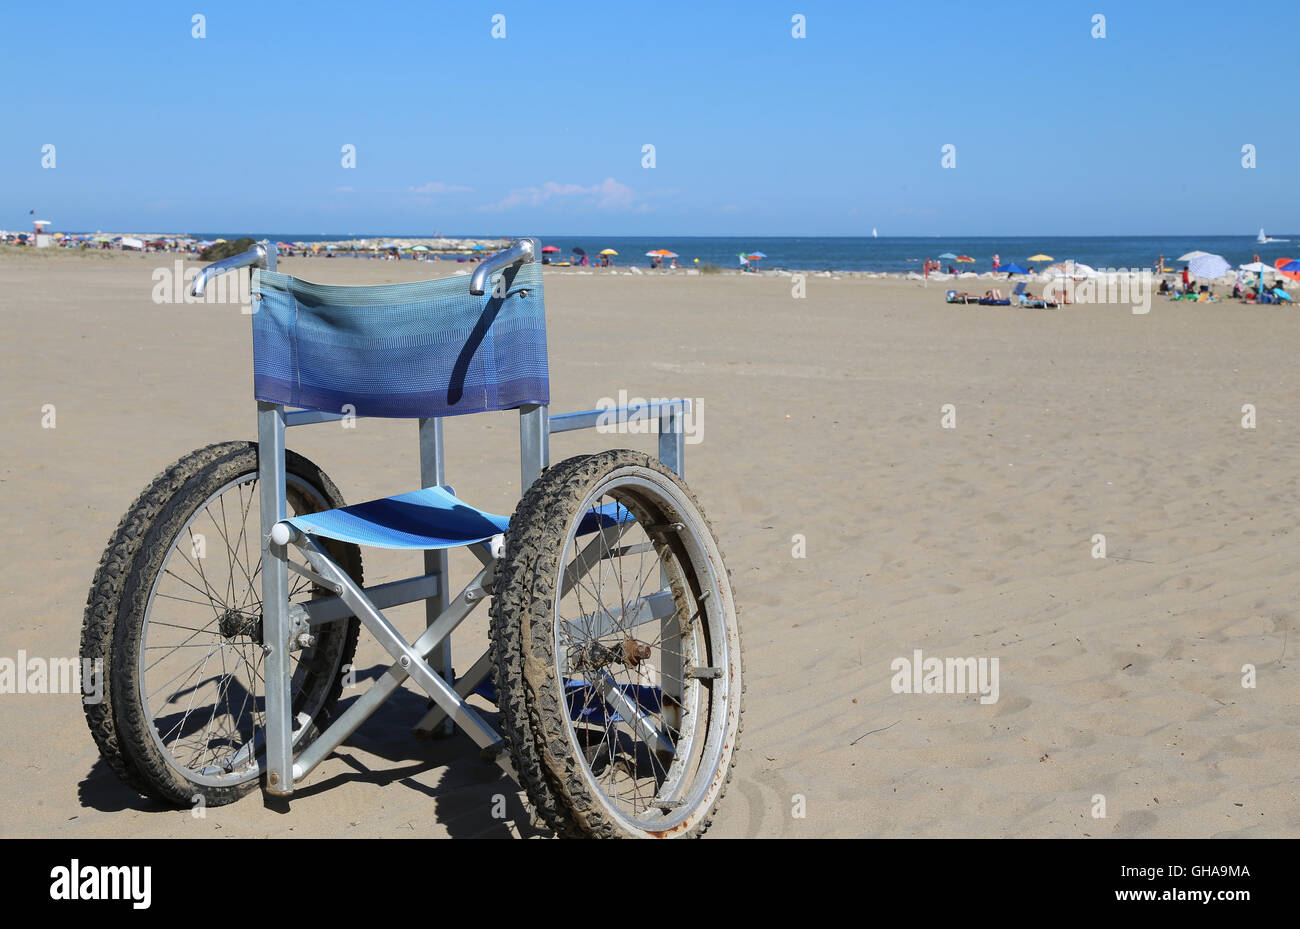 Alluminio sedia a rotelle sulla sabbia della spiaggia in estate Foto Stock